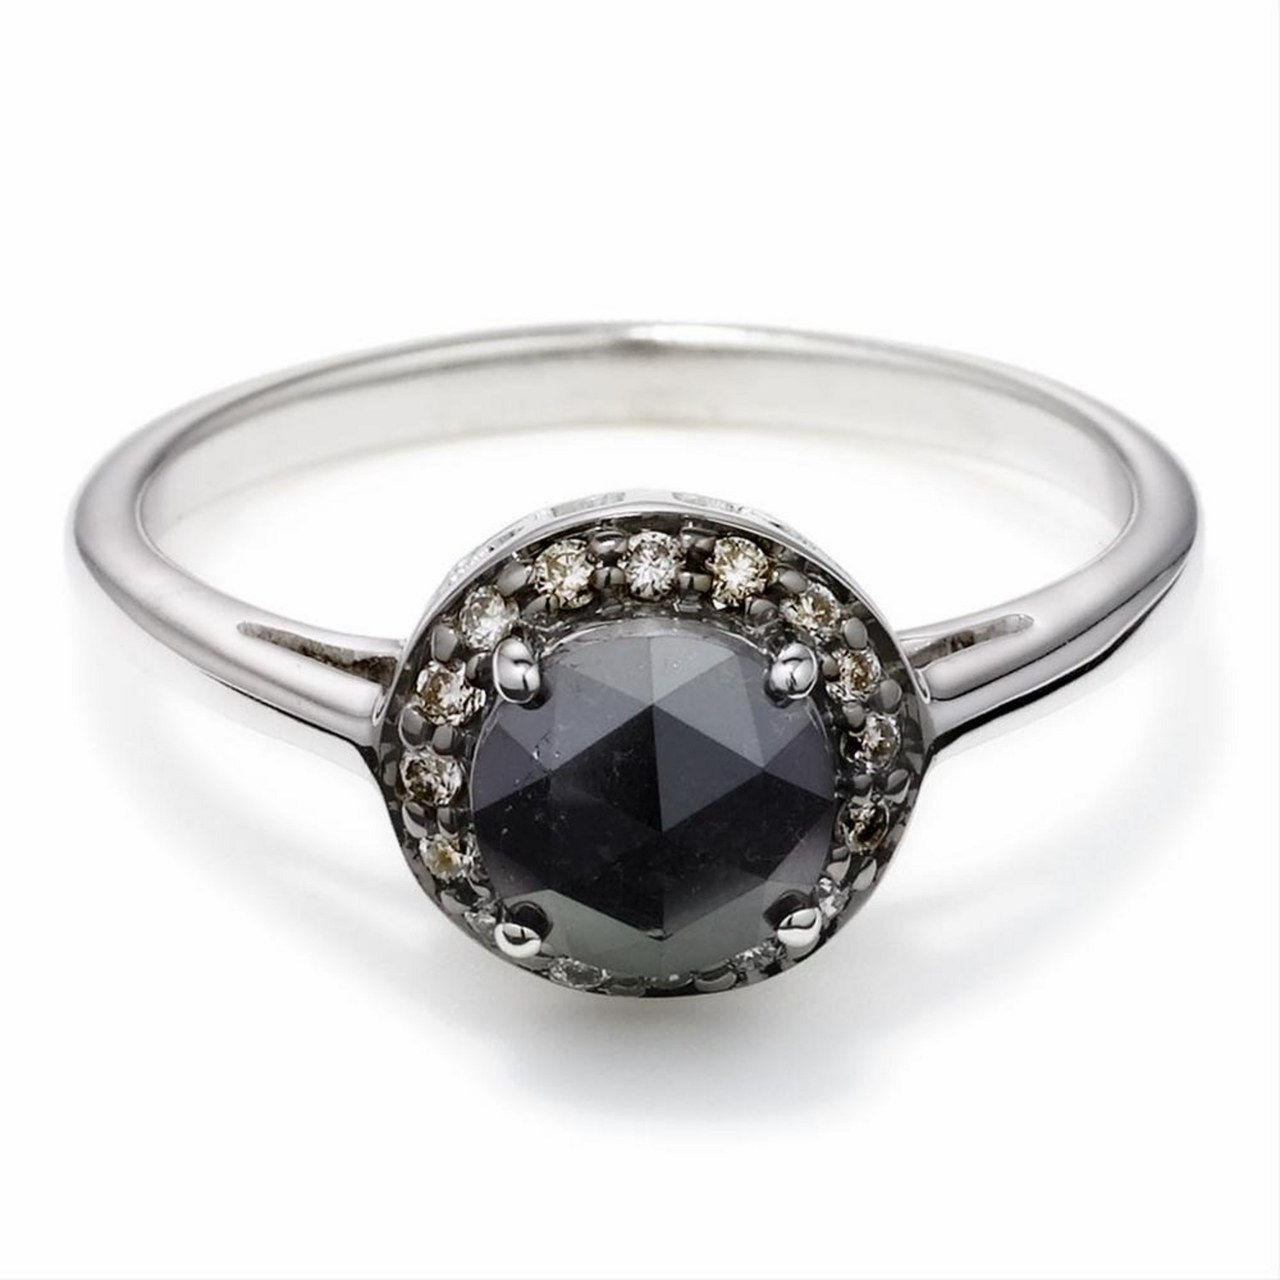 5 engagement rings inspired by kat von d black diamond skull 1218